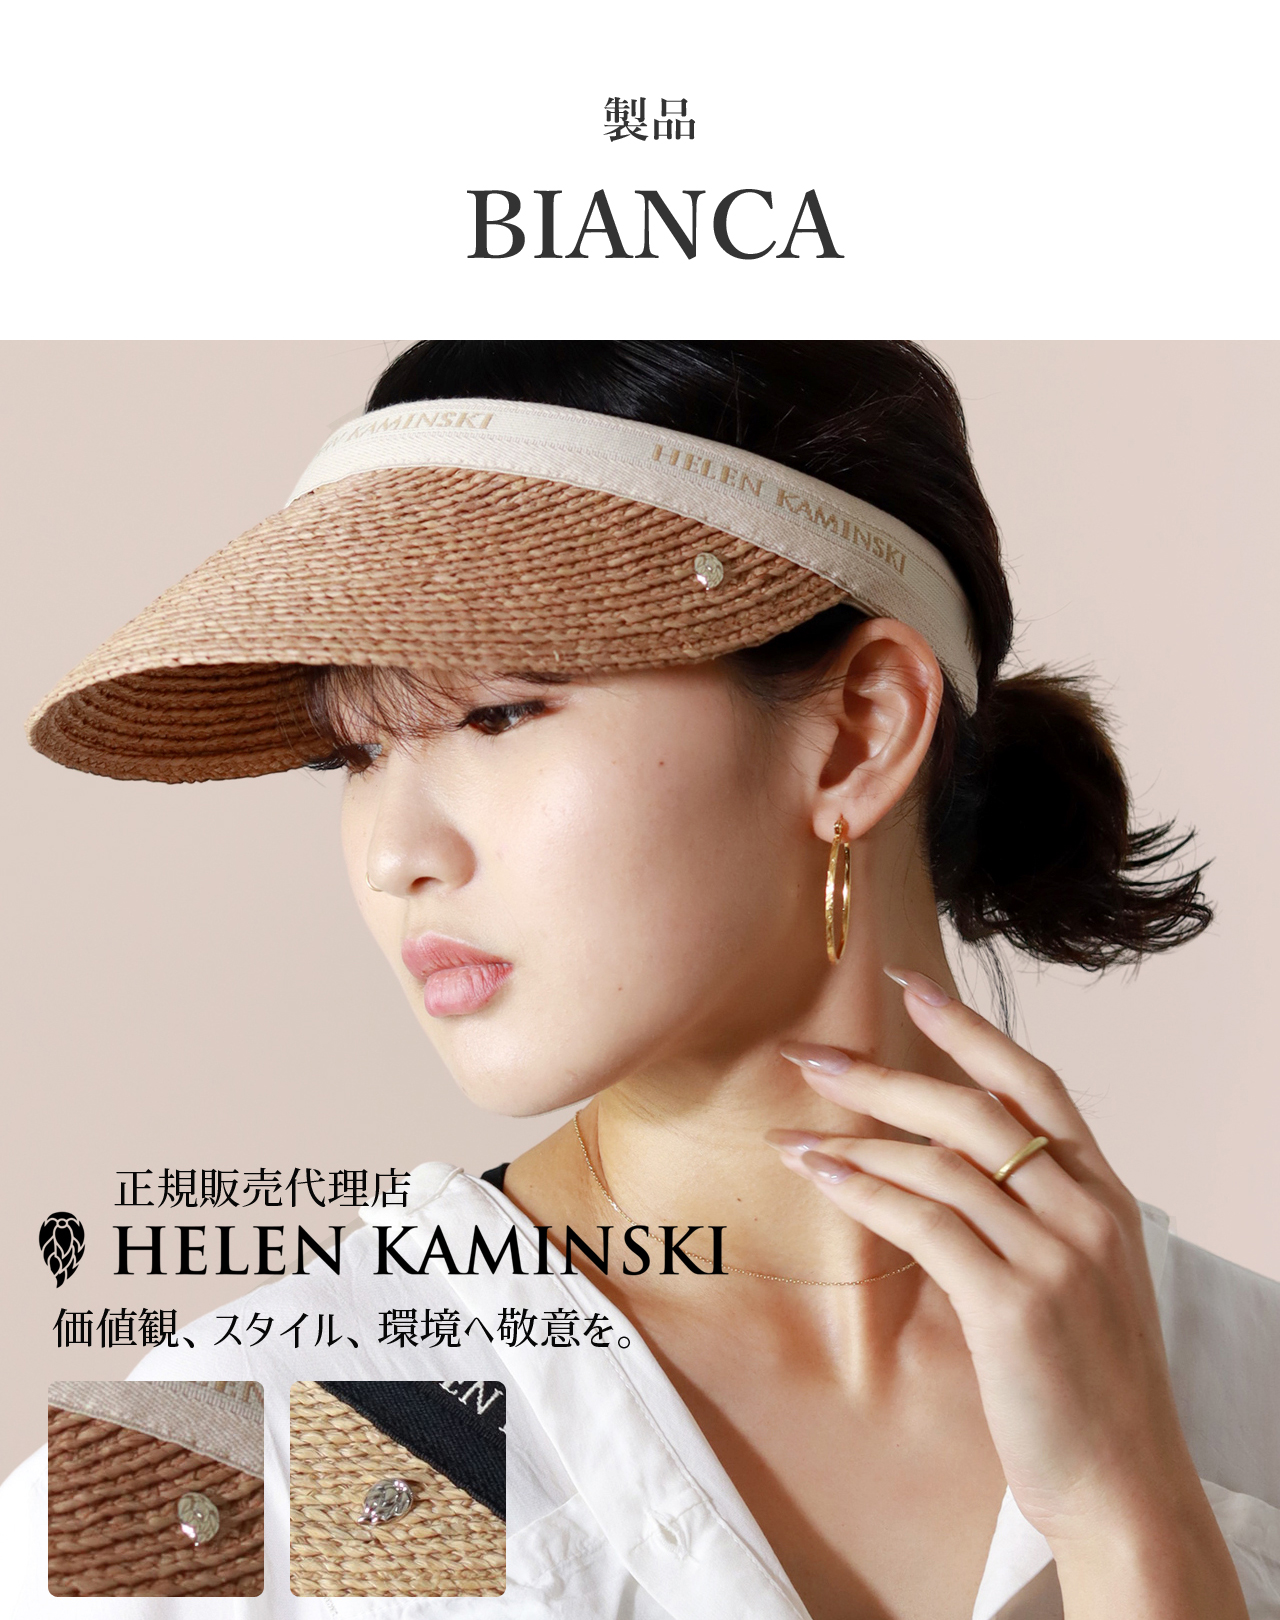 ヘレンカミンスキー サンバイザー ラフィア BIANCA 正規品 ブランド HELEN KAMINSKI 帽子 レディース UPF50+ UVカット  おしゃれ 紫外線対策 30代 40代 50代 60代